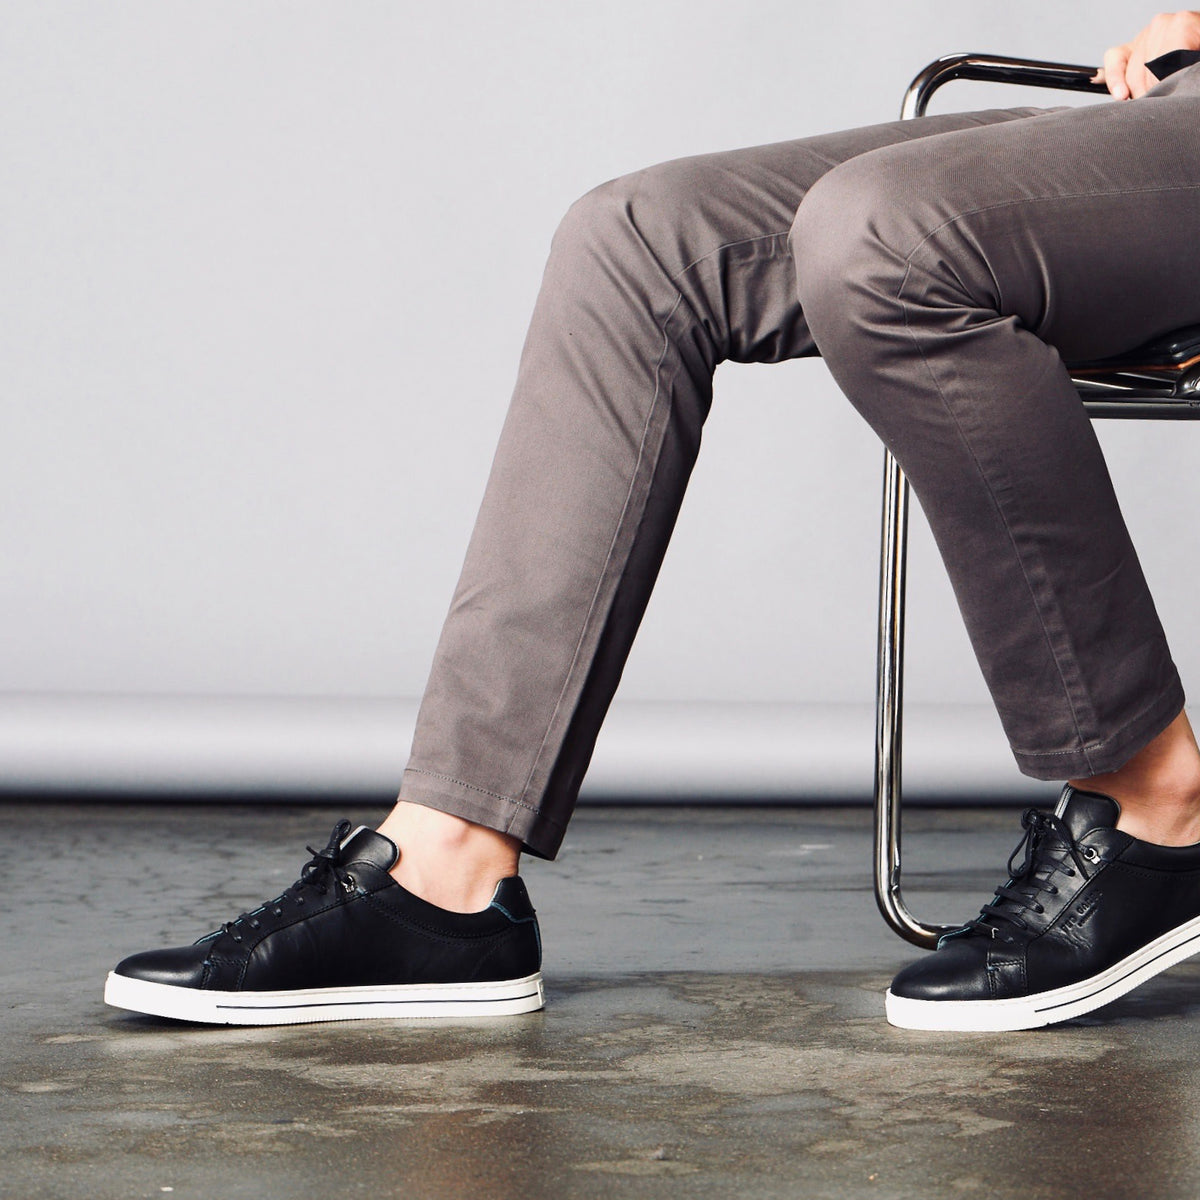 What colour shirt suits black pants and black shoes? - Quora